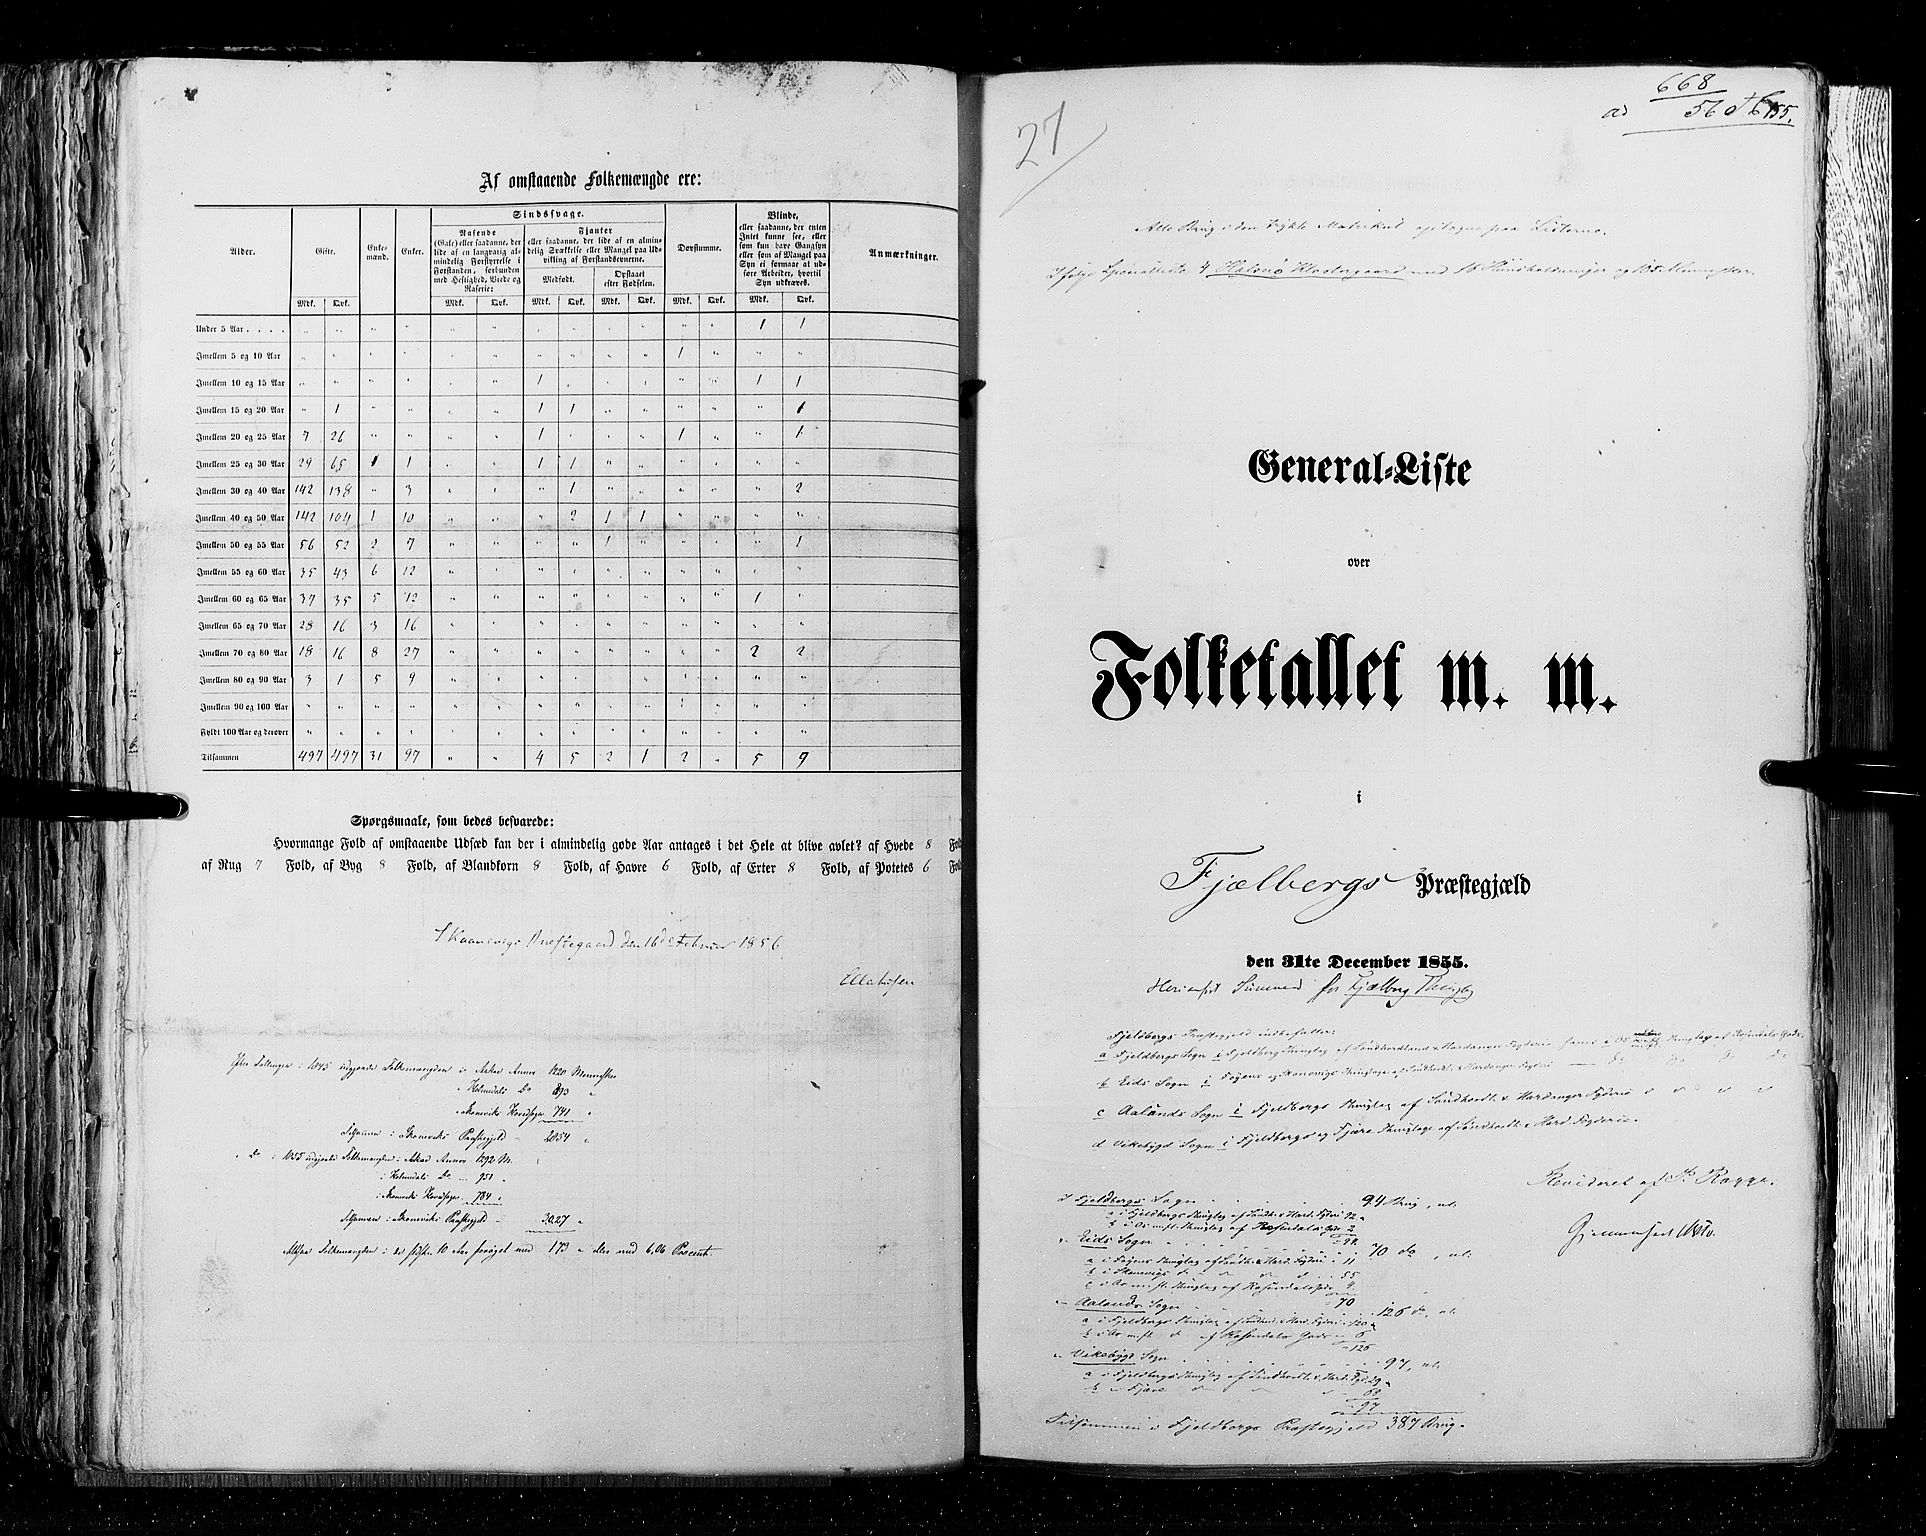 RA, Folketellingen 1855, bind 4: Stavanger amt og Søndre Bergenhus amt, 1855, s. 155